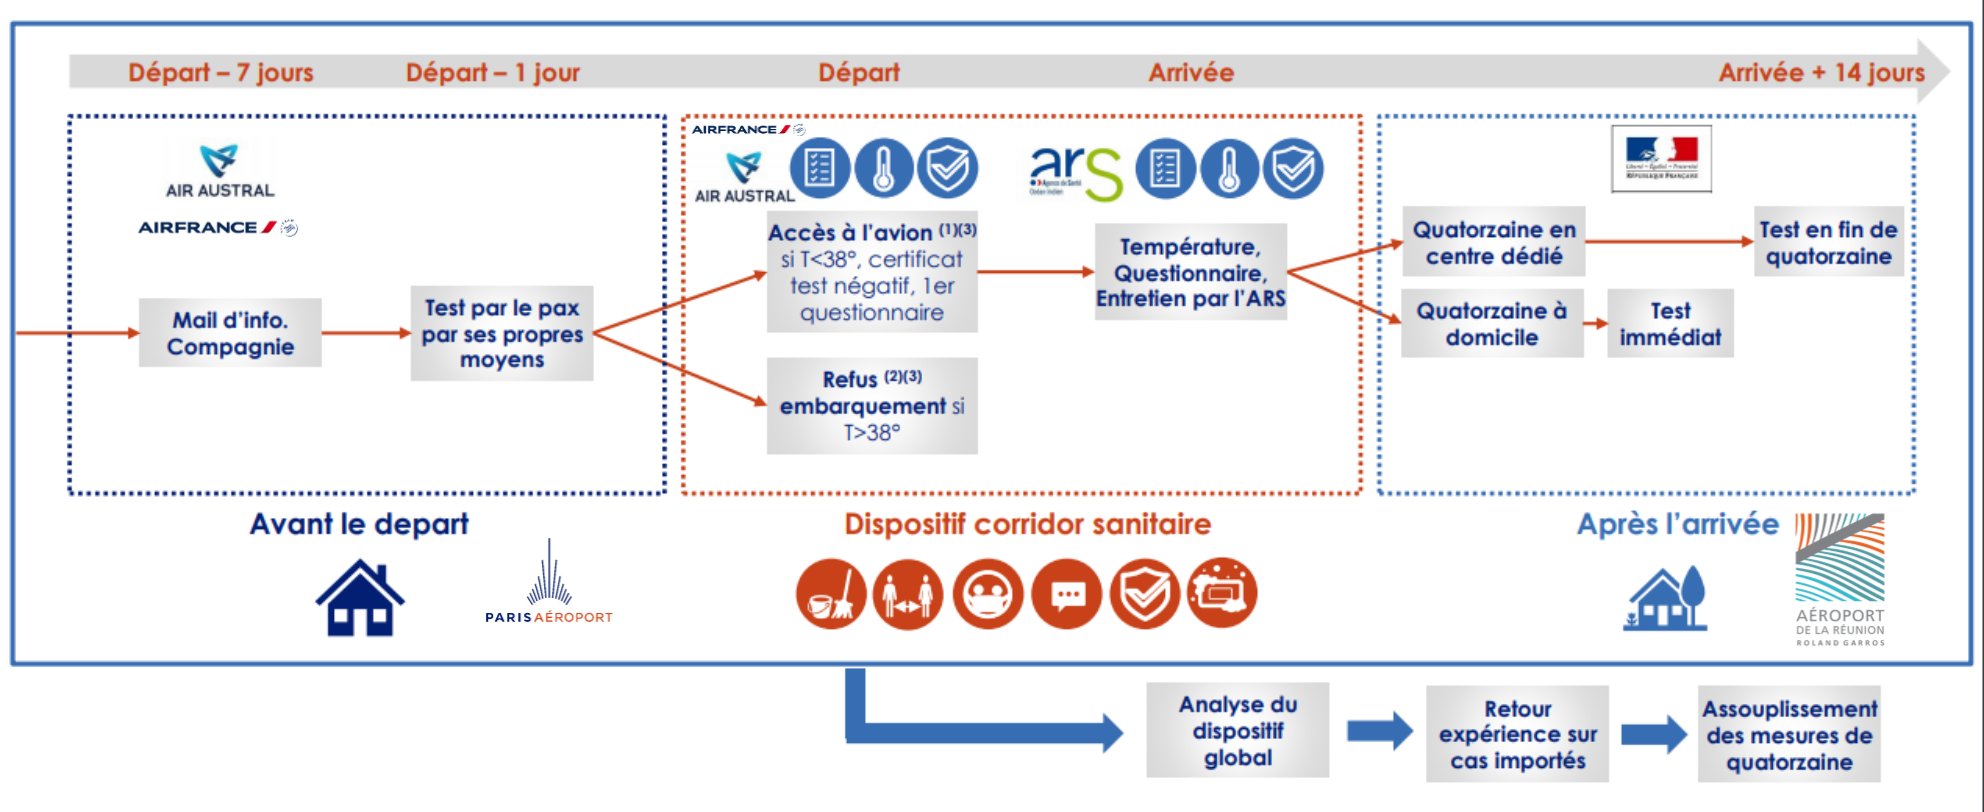 Aéroport: un corridor sanitaire entre Paris et Saint-Denis en expérimentation